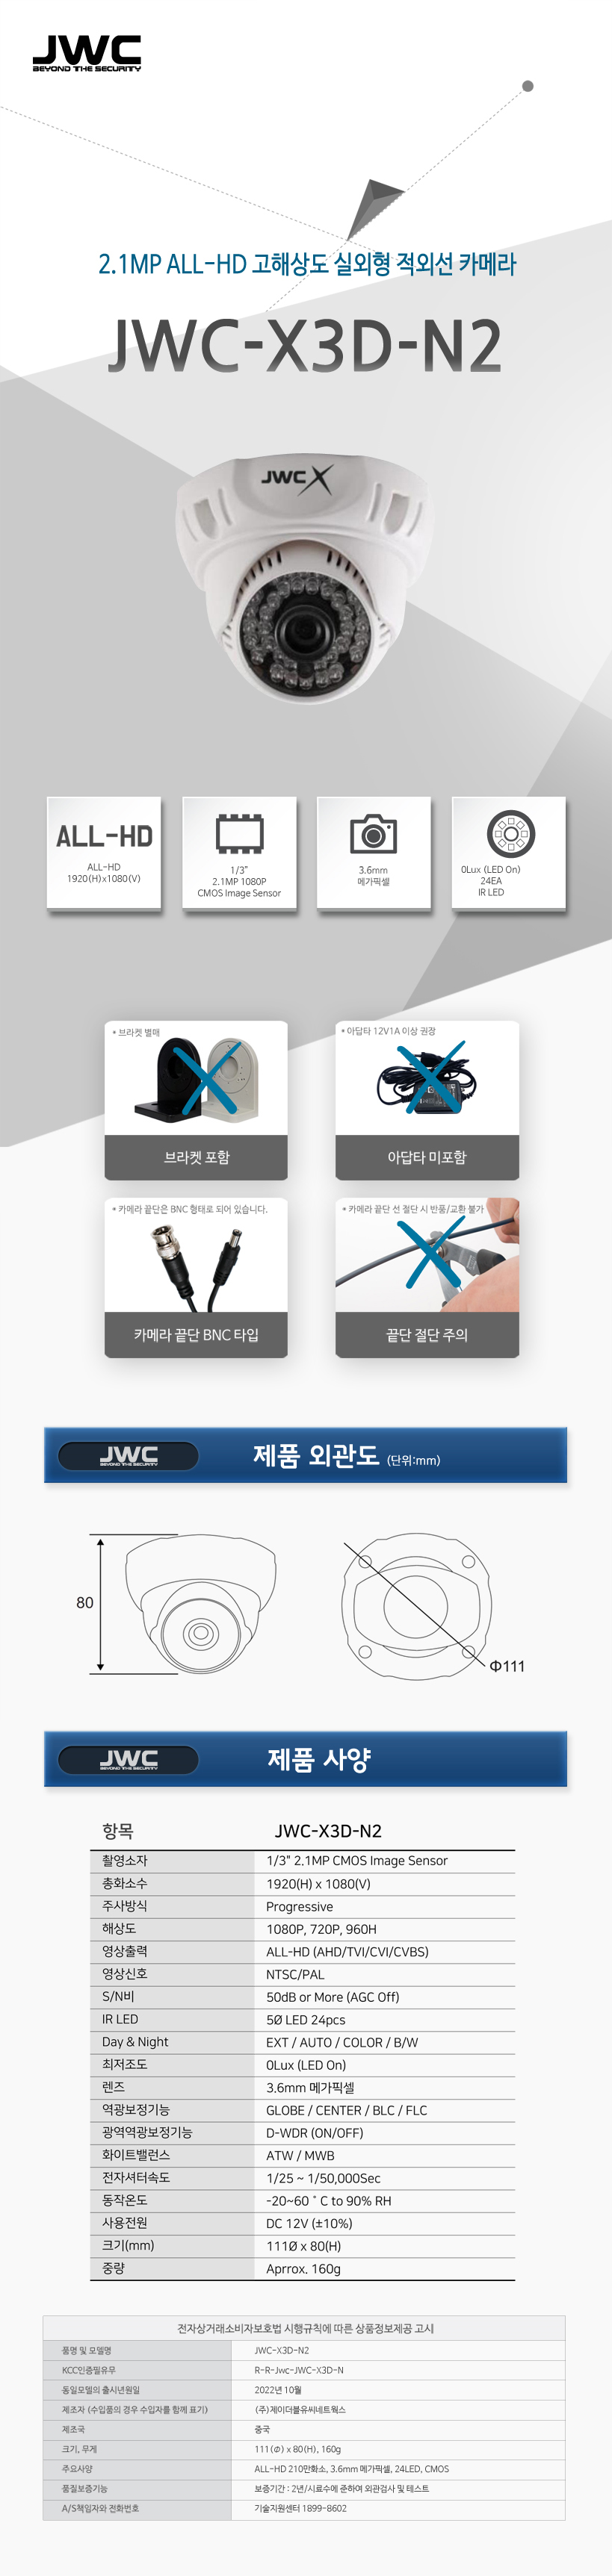 JWC-X3D-N2_.jpg